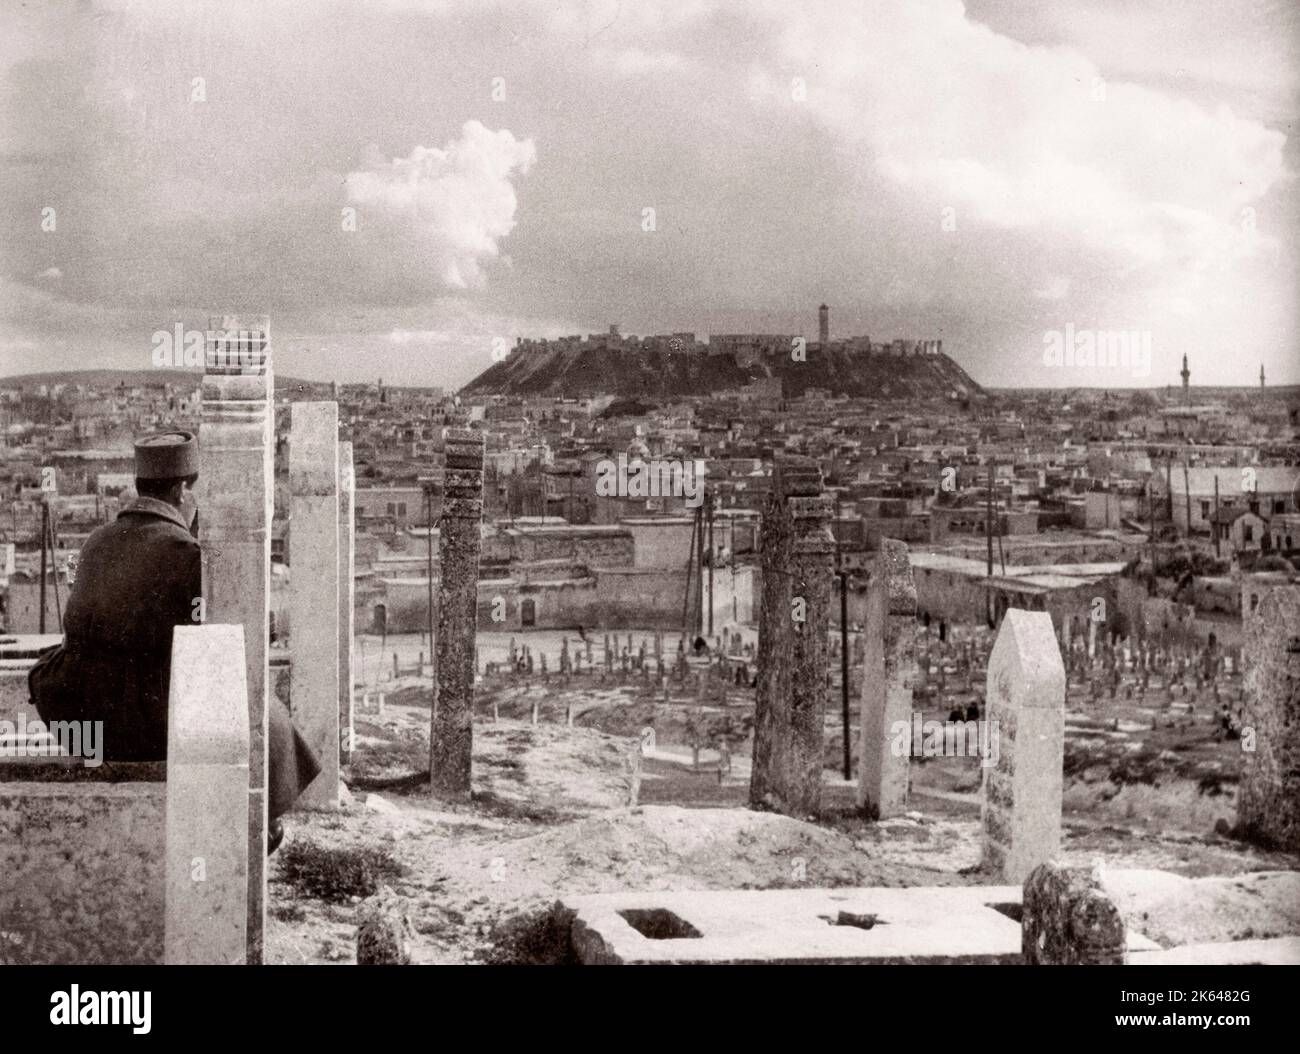 1943 Moyen-Orient Syrie - scène à Alep vue de la ville Photographie d'un officier de recrutement de l'armée britannique stationné en Afrique de l'est et au Moyen-Orient pendant la Seconde Guerre mondiale Banque D'Images